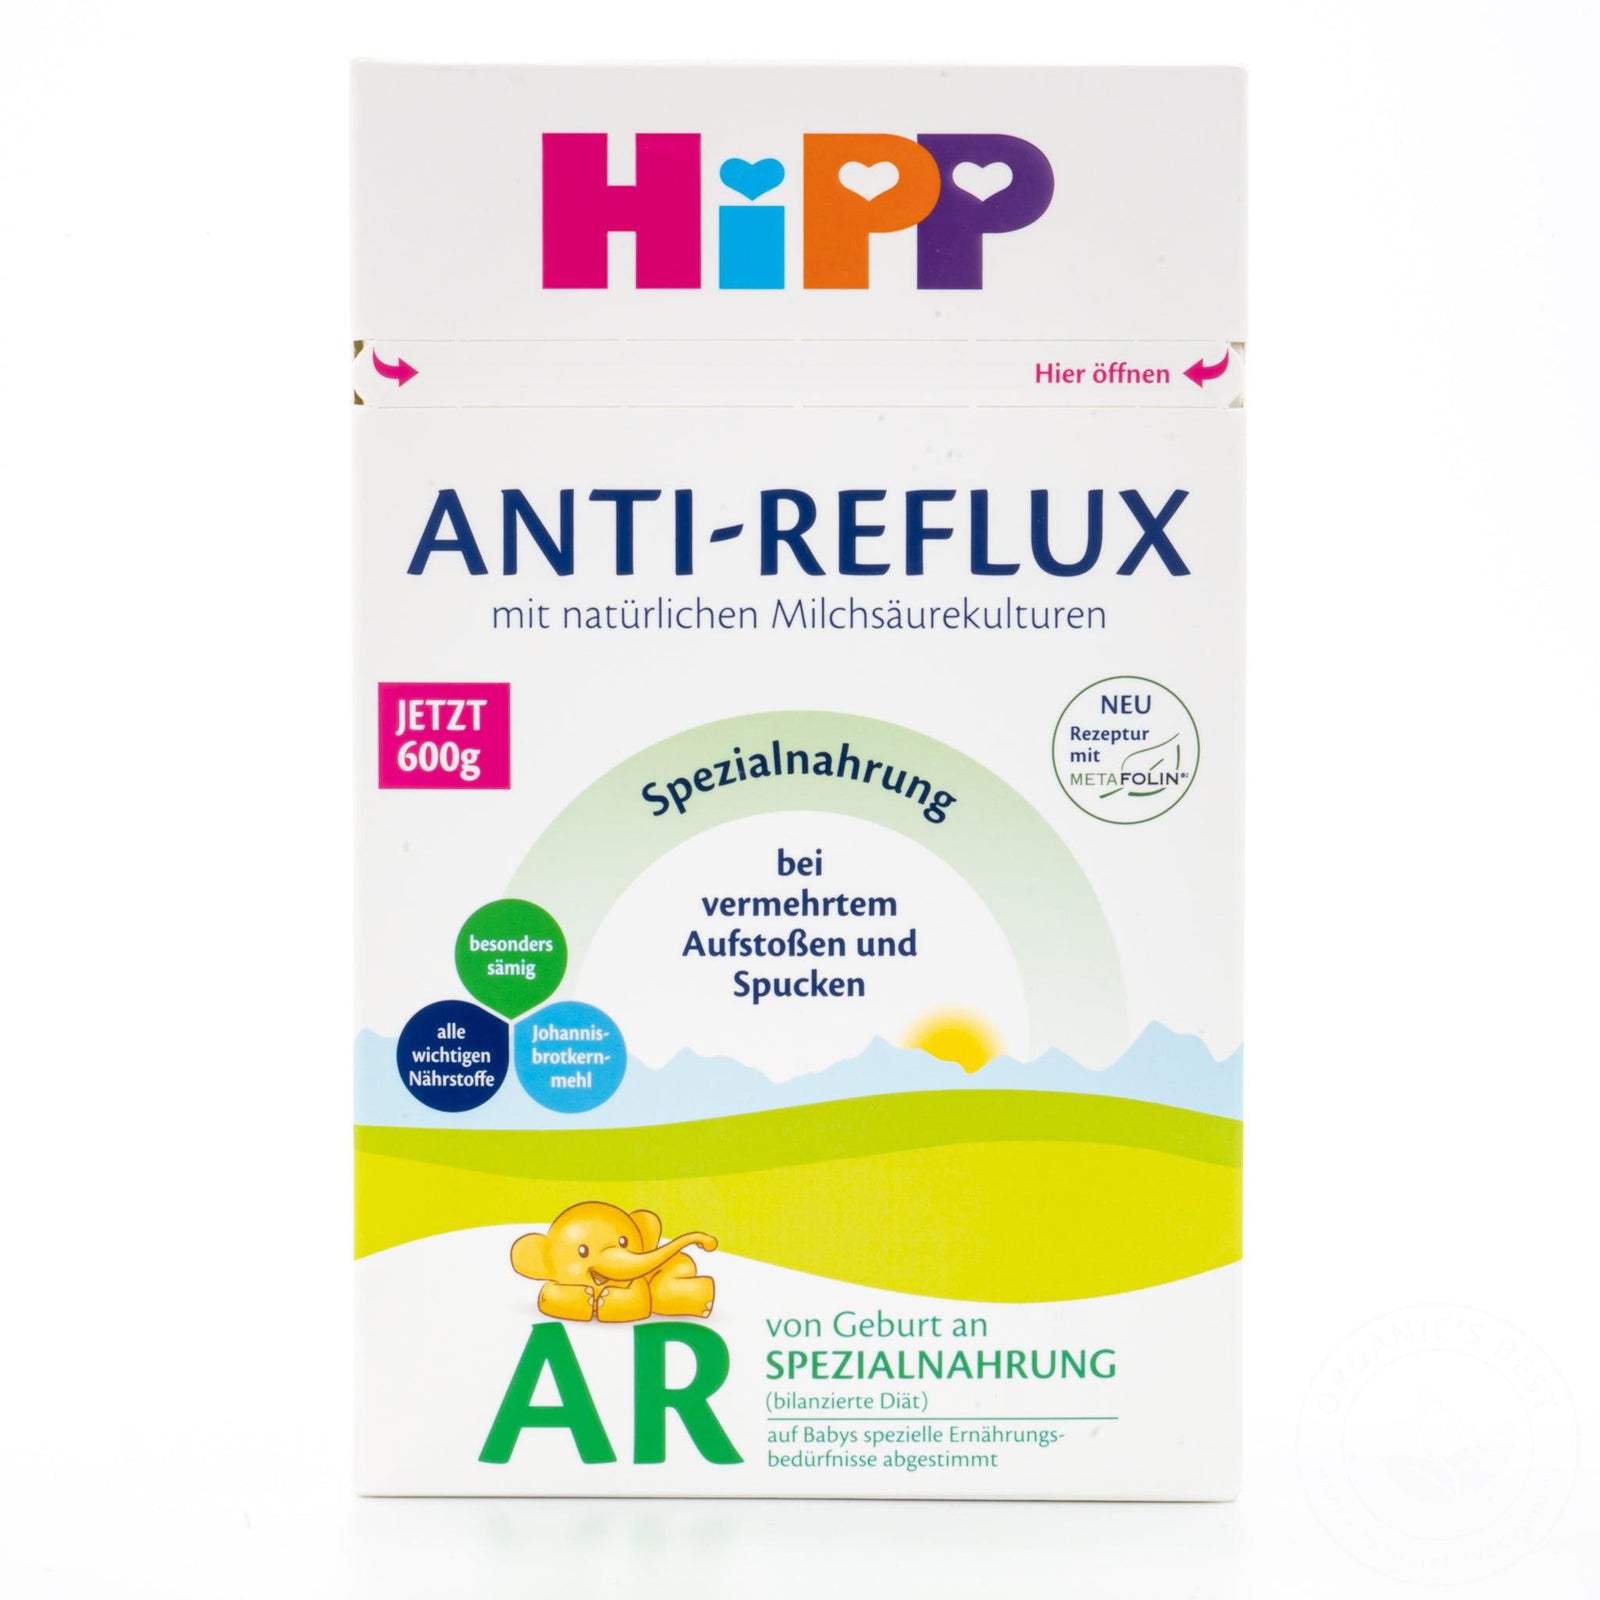 HiPP Anti-Reflux Special Formula - Birth Onwards Formula | Organic European Baby Formula